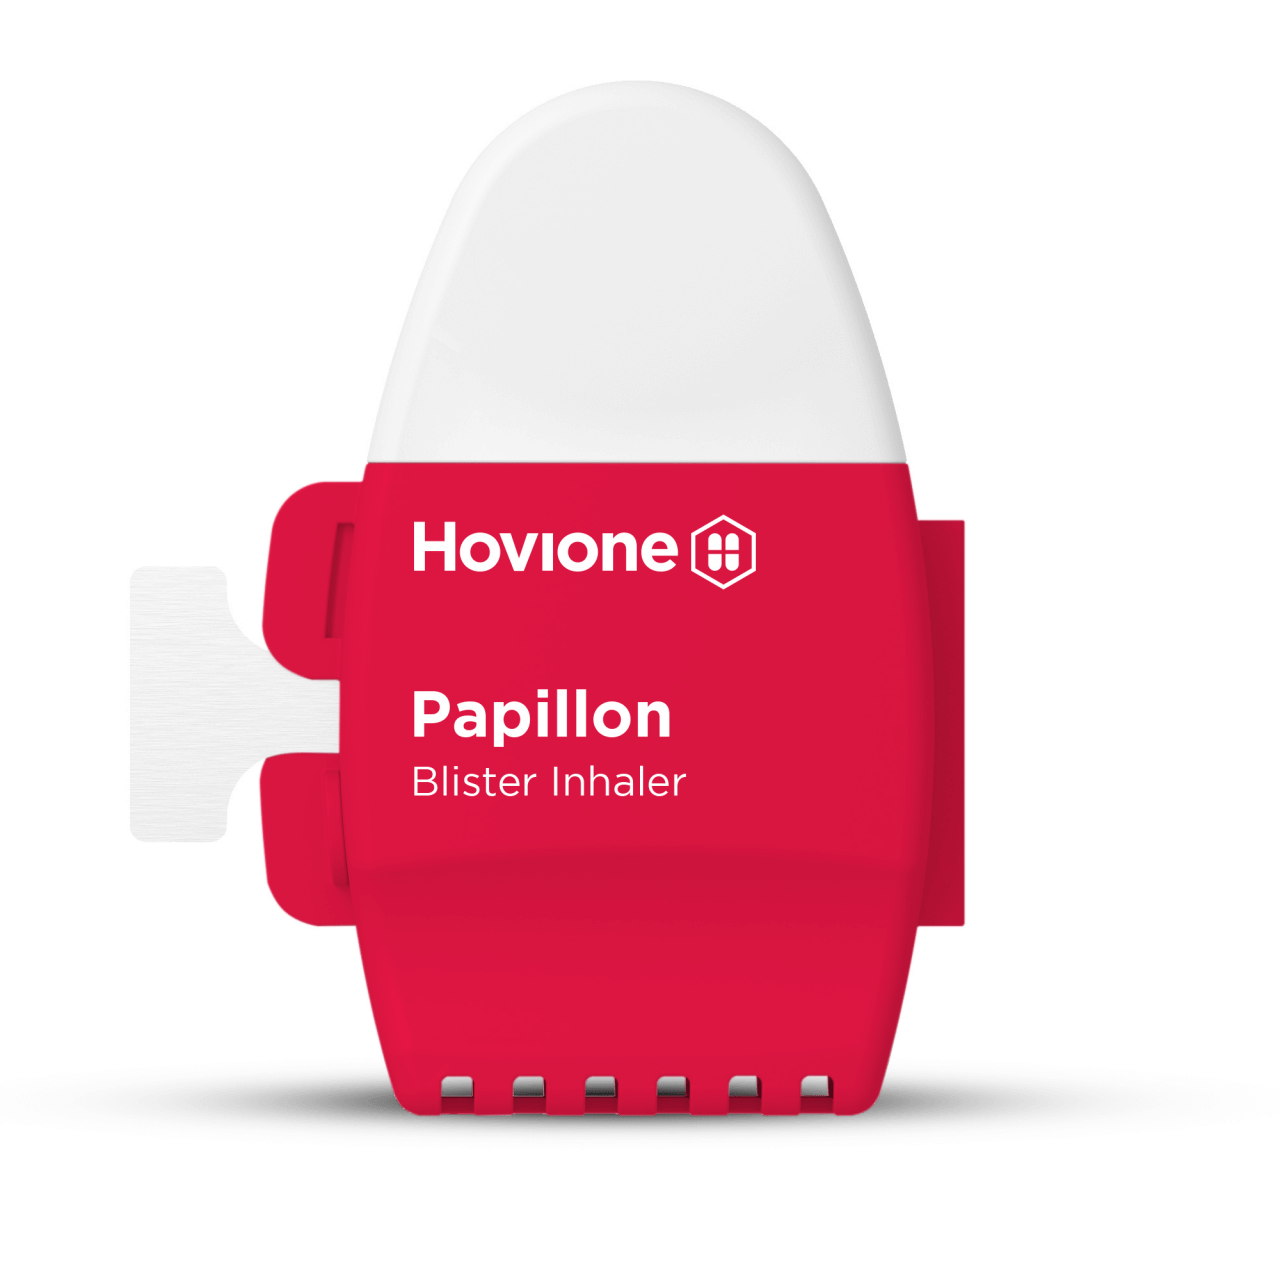 Papillon DPI device | Hovione